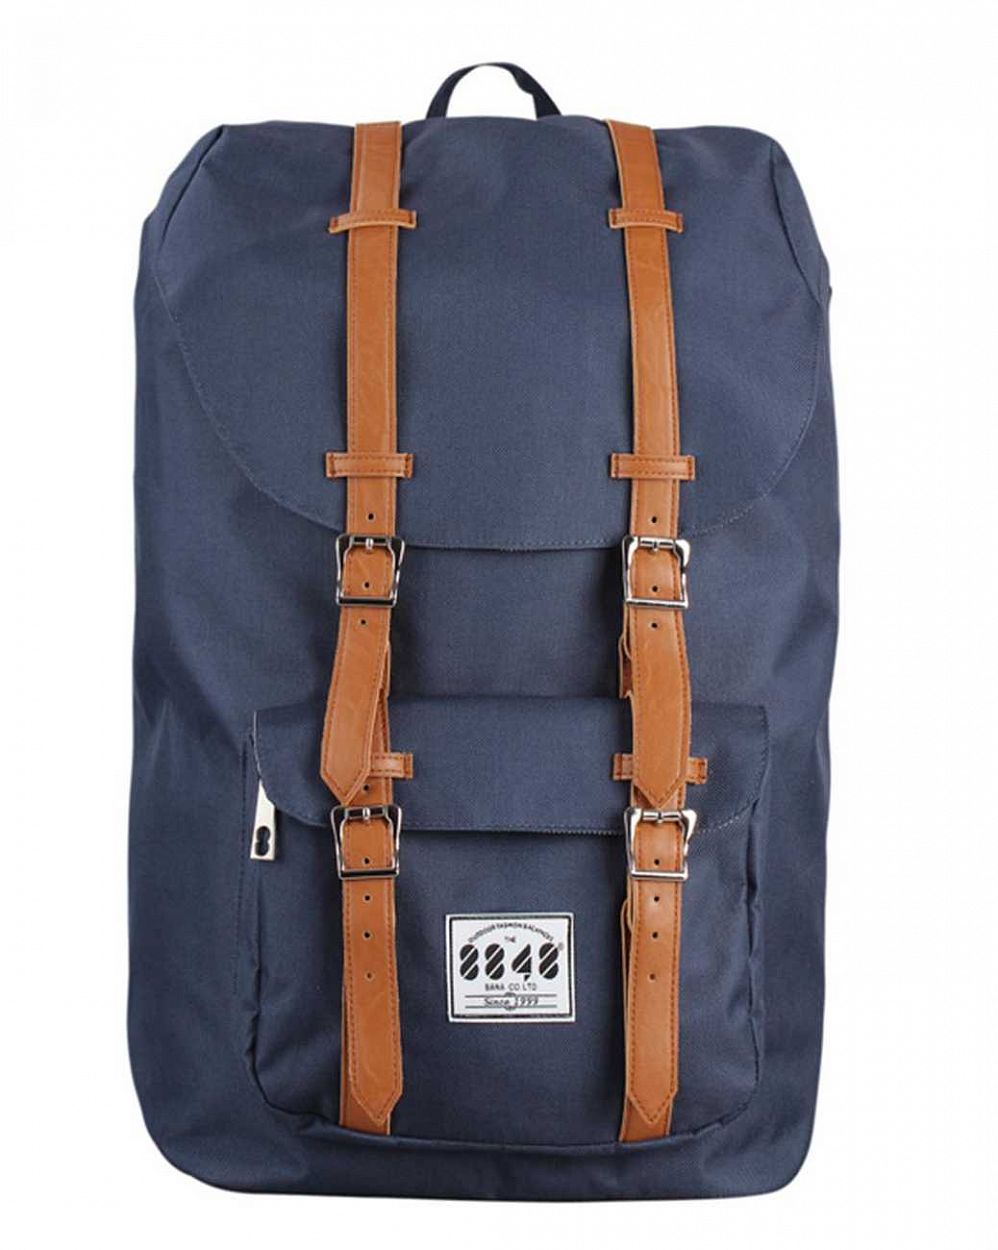 Рюкзак для путешествий с отделом для 15 ноутбука 8848 Navy Tan отзывы